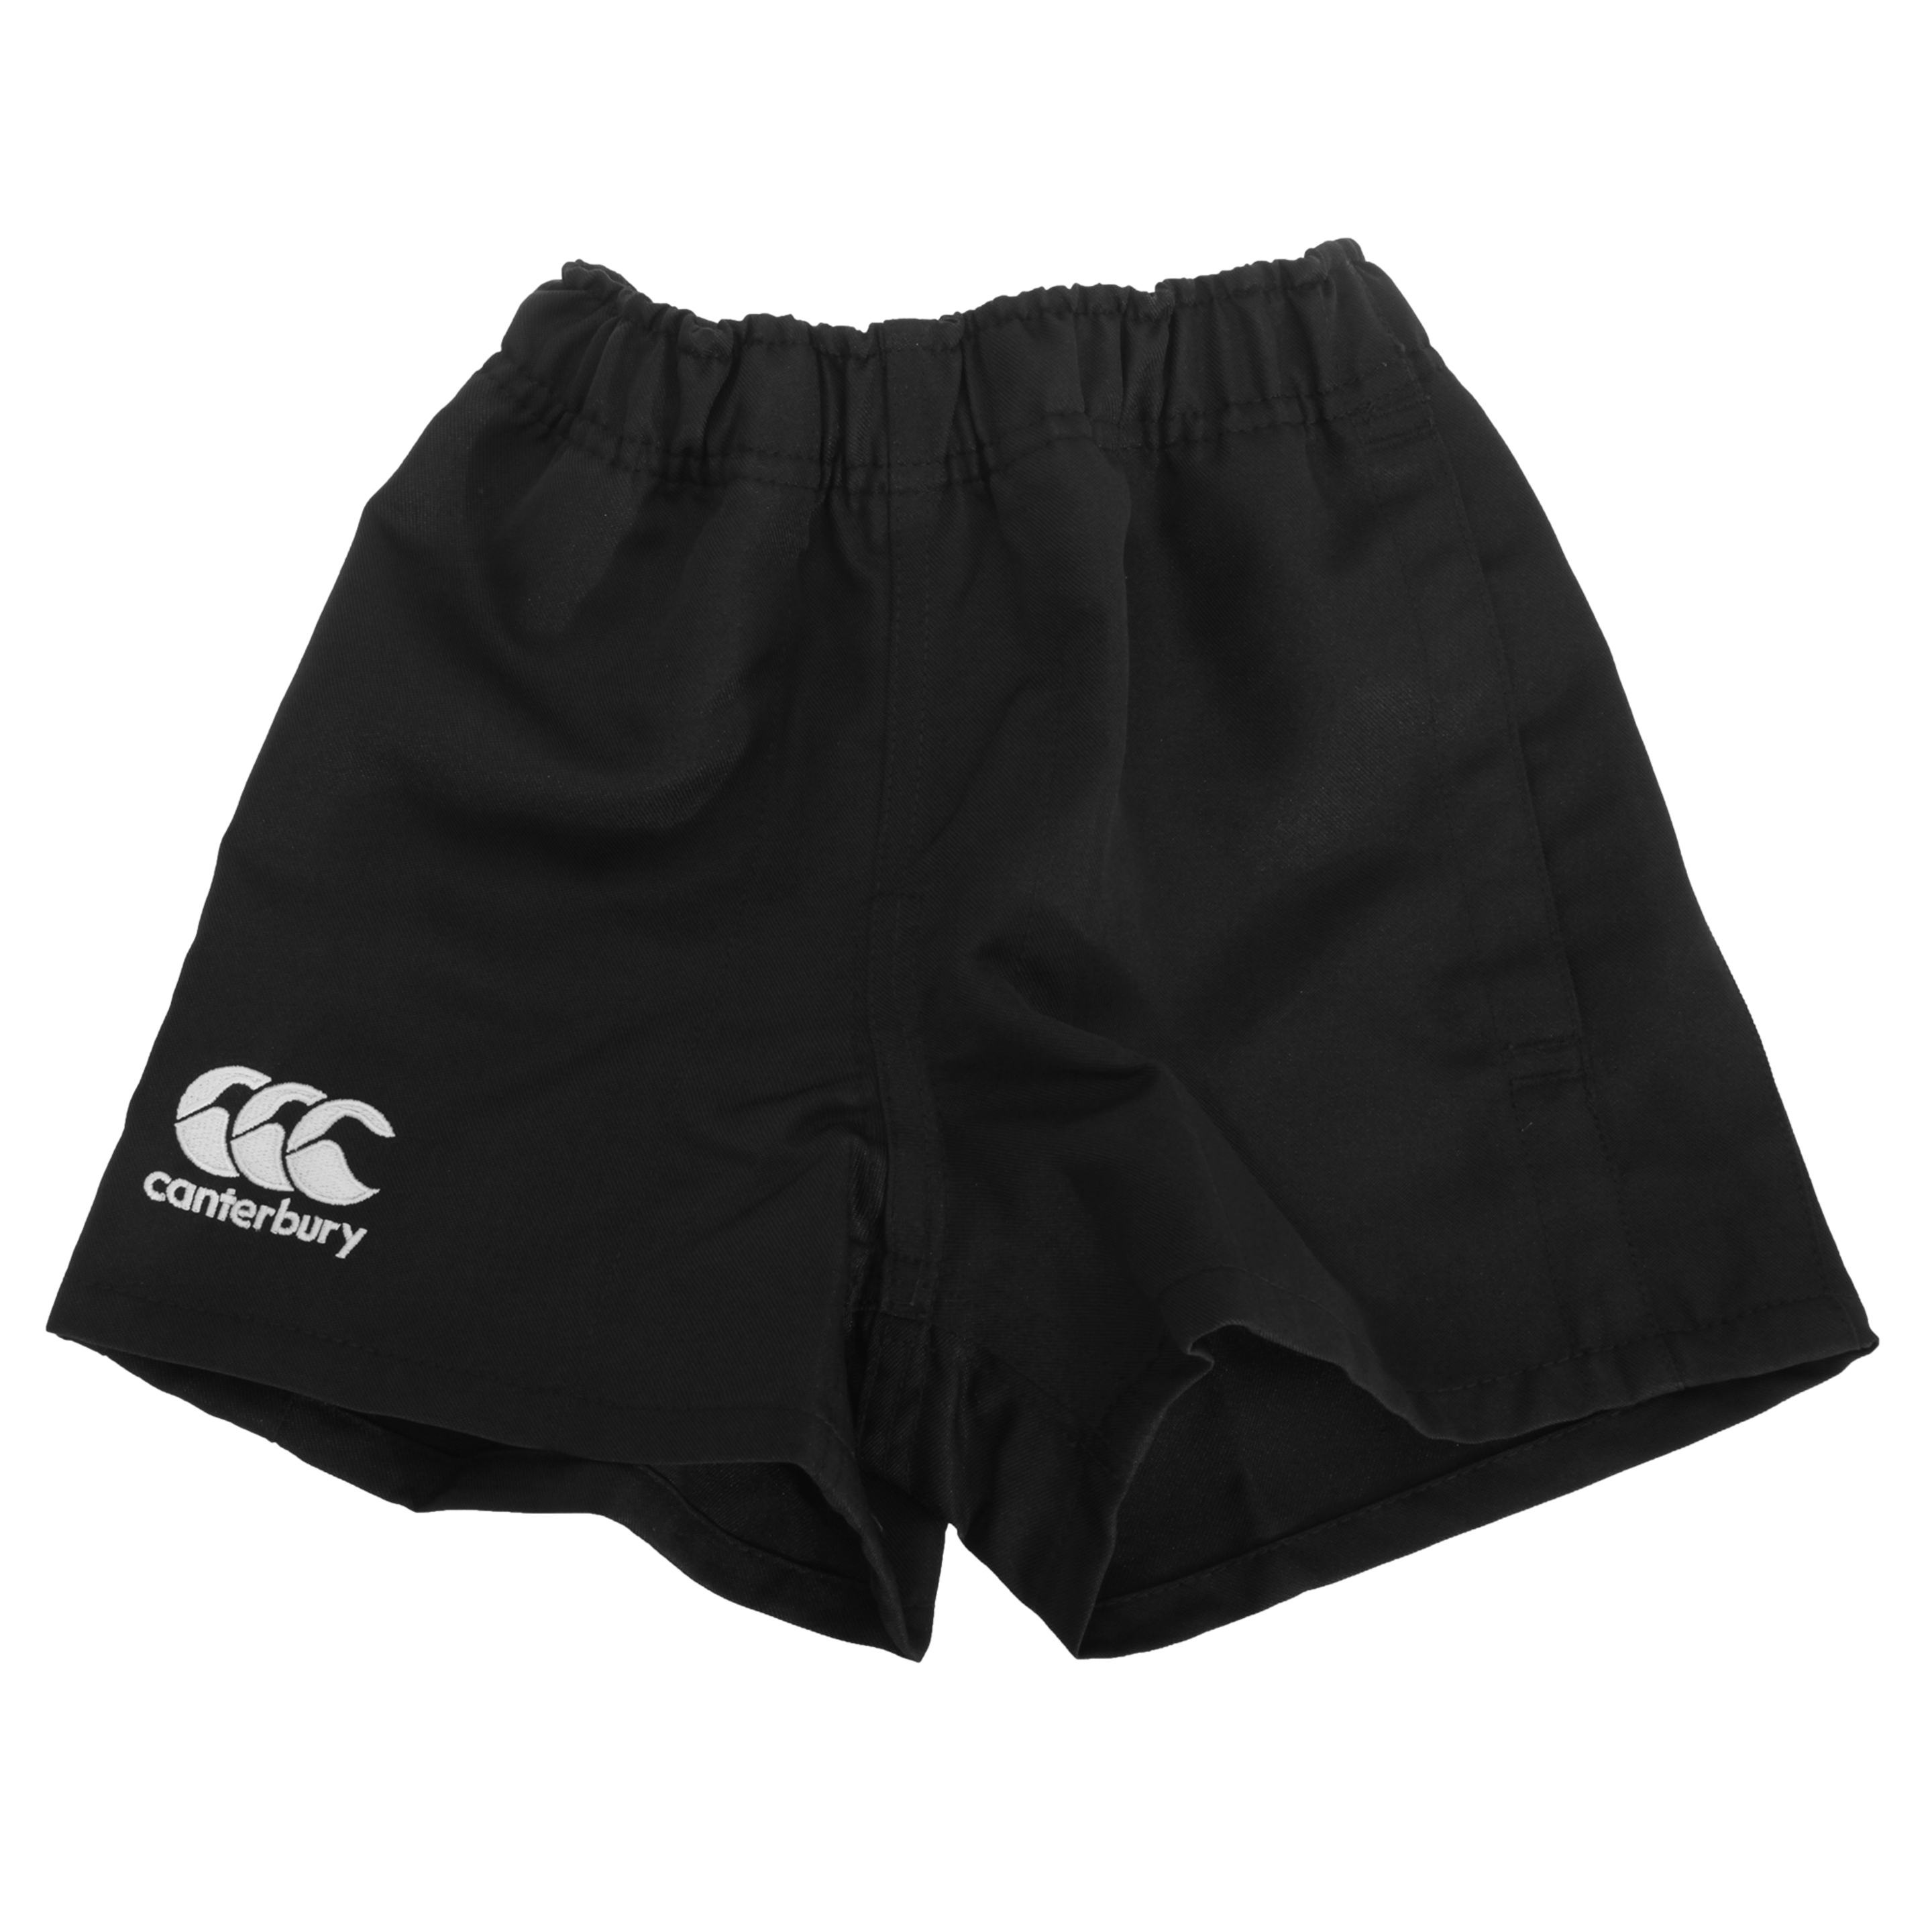 Canterbury - Pantalones Cortos De Deporte Elásticos Modelo Professional